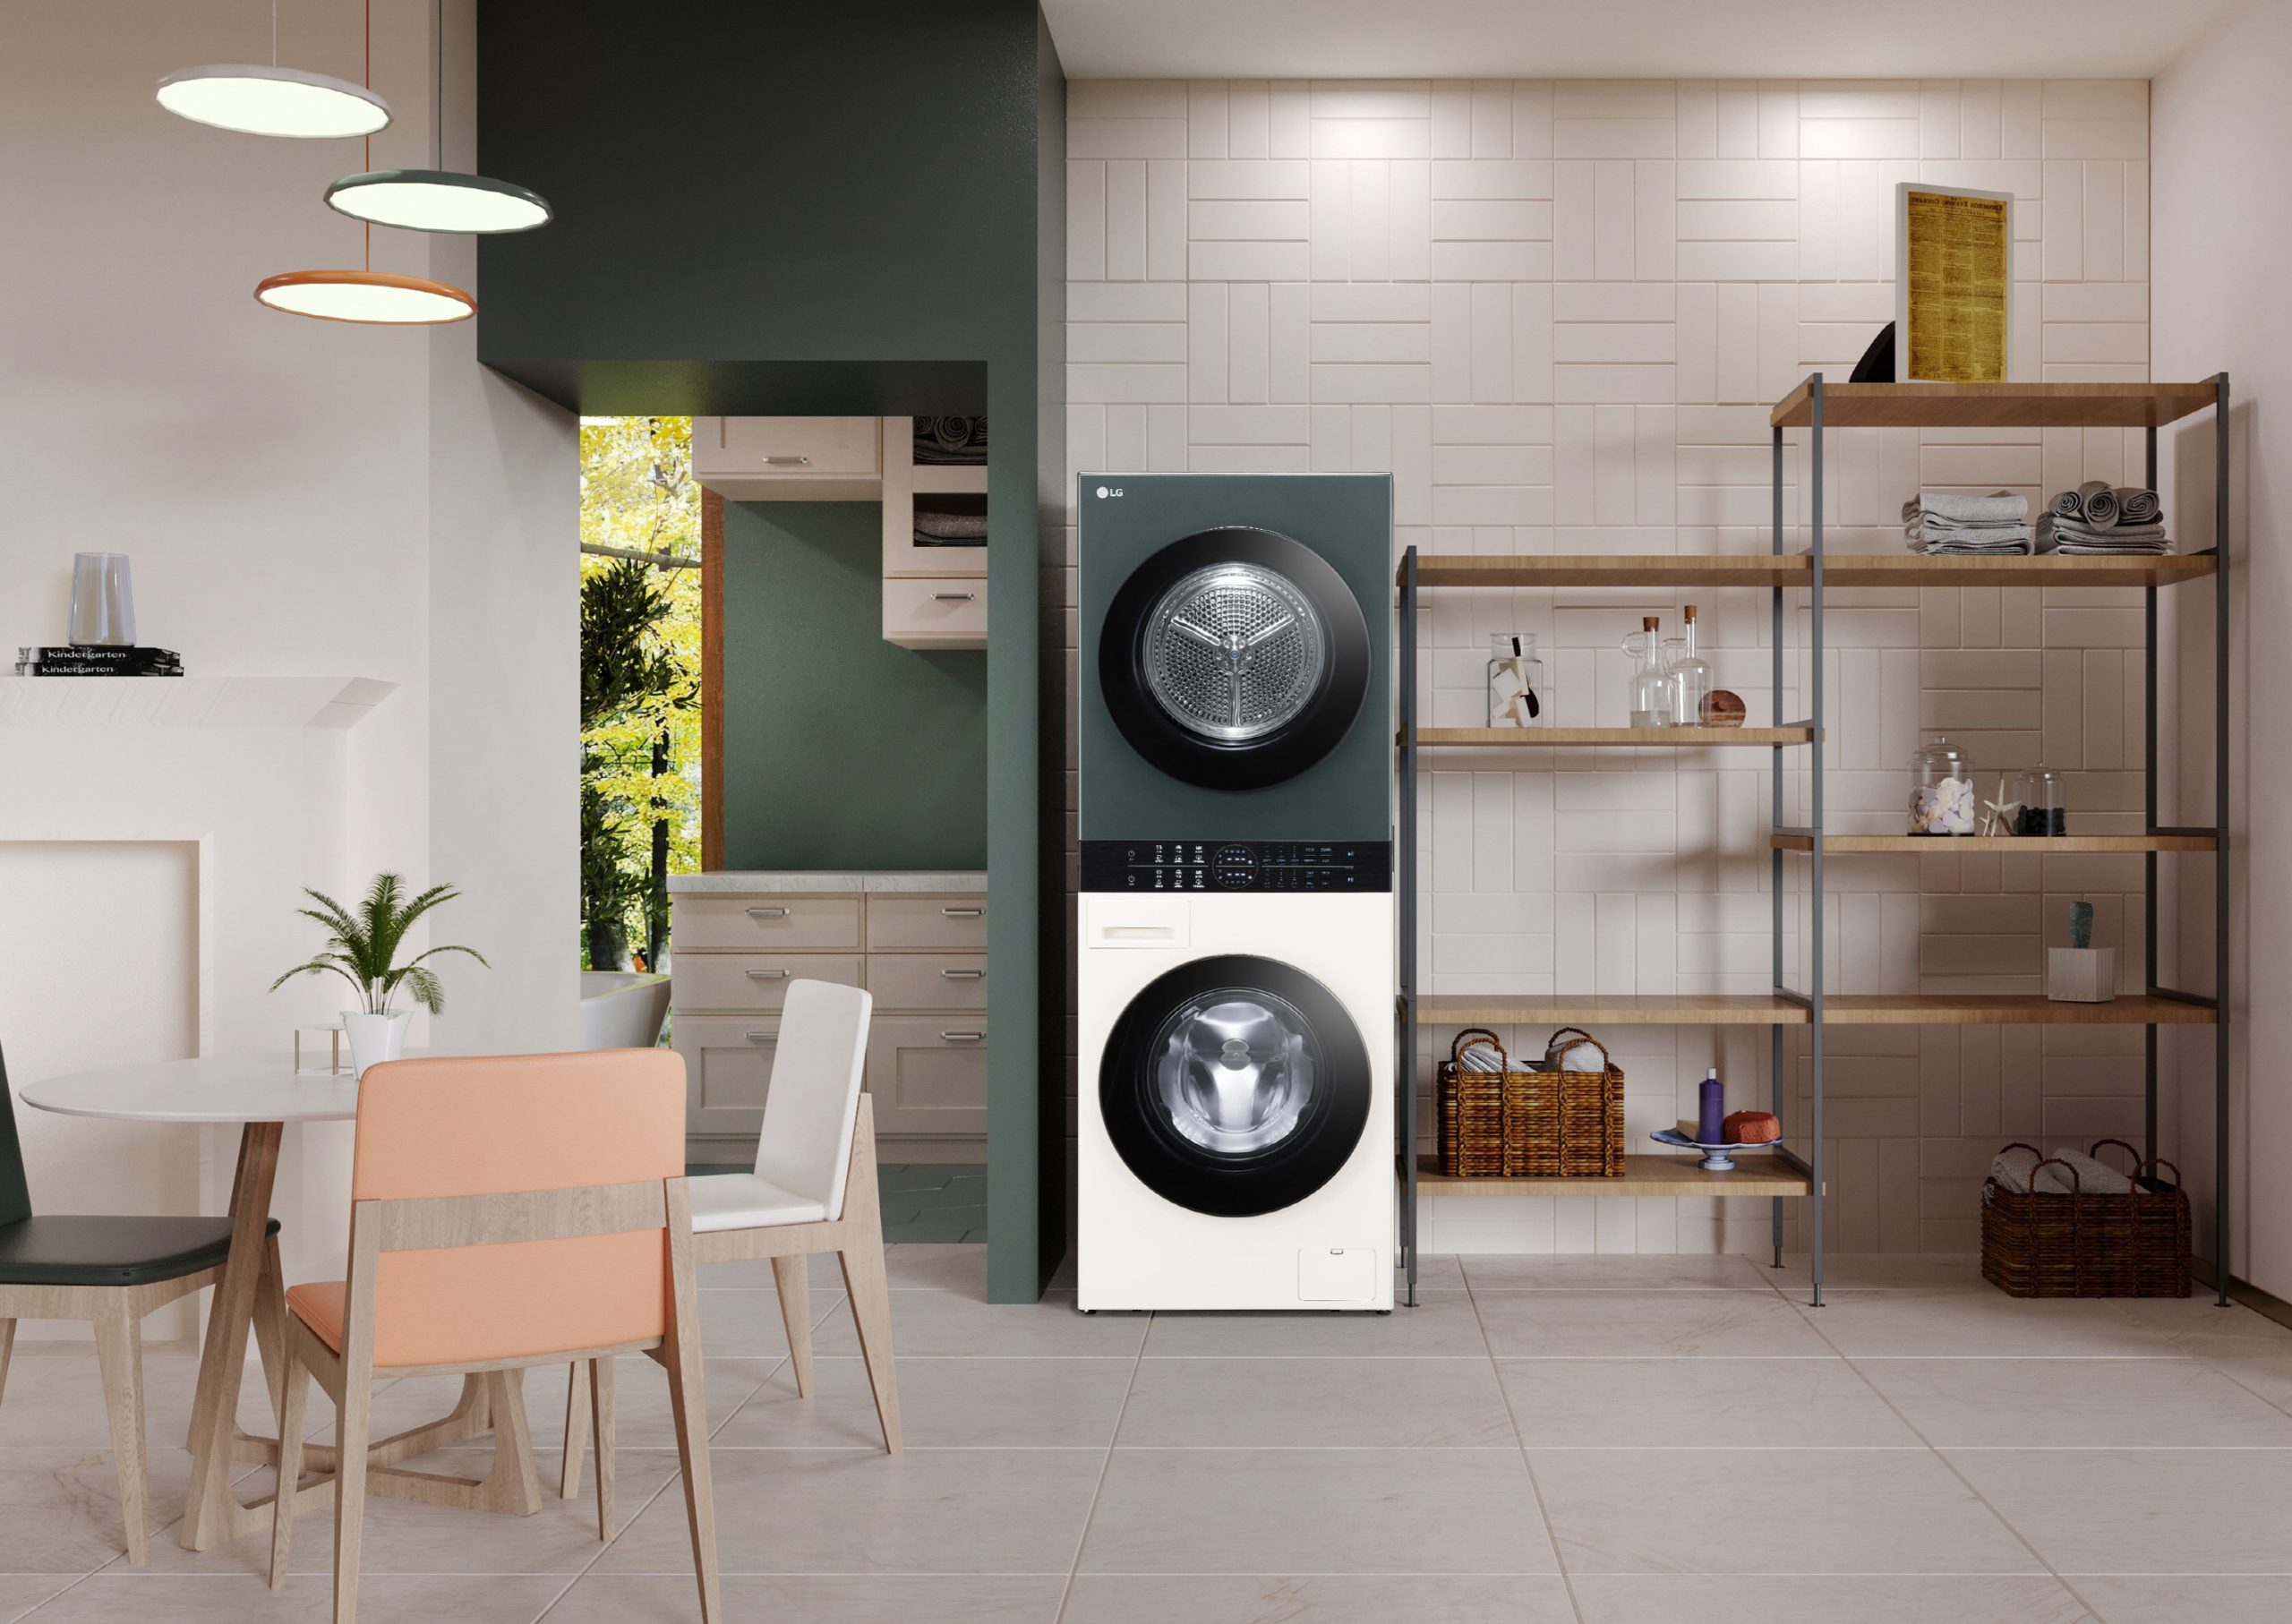 Foto de IFA 2022: LG presenta su solución de lavado WashTower Compact